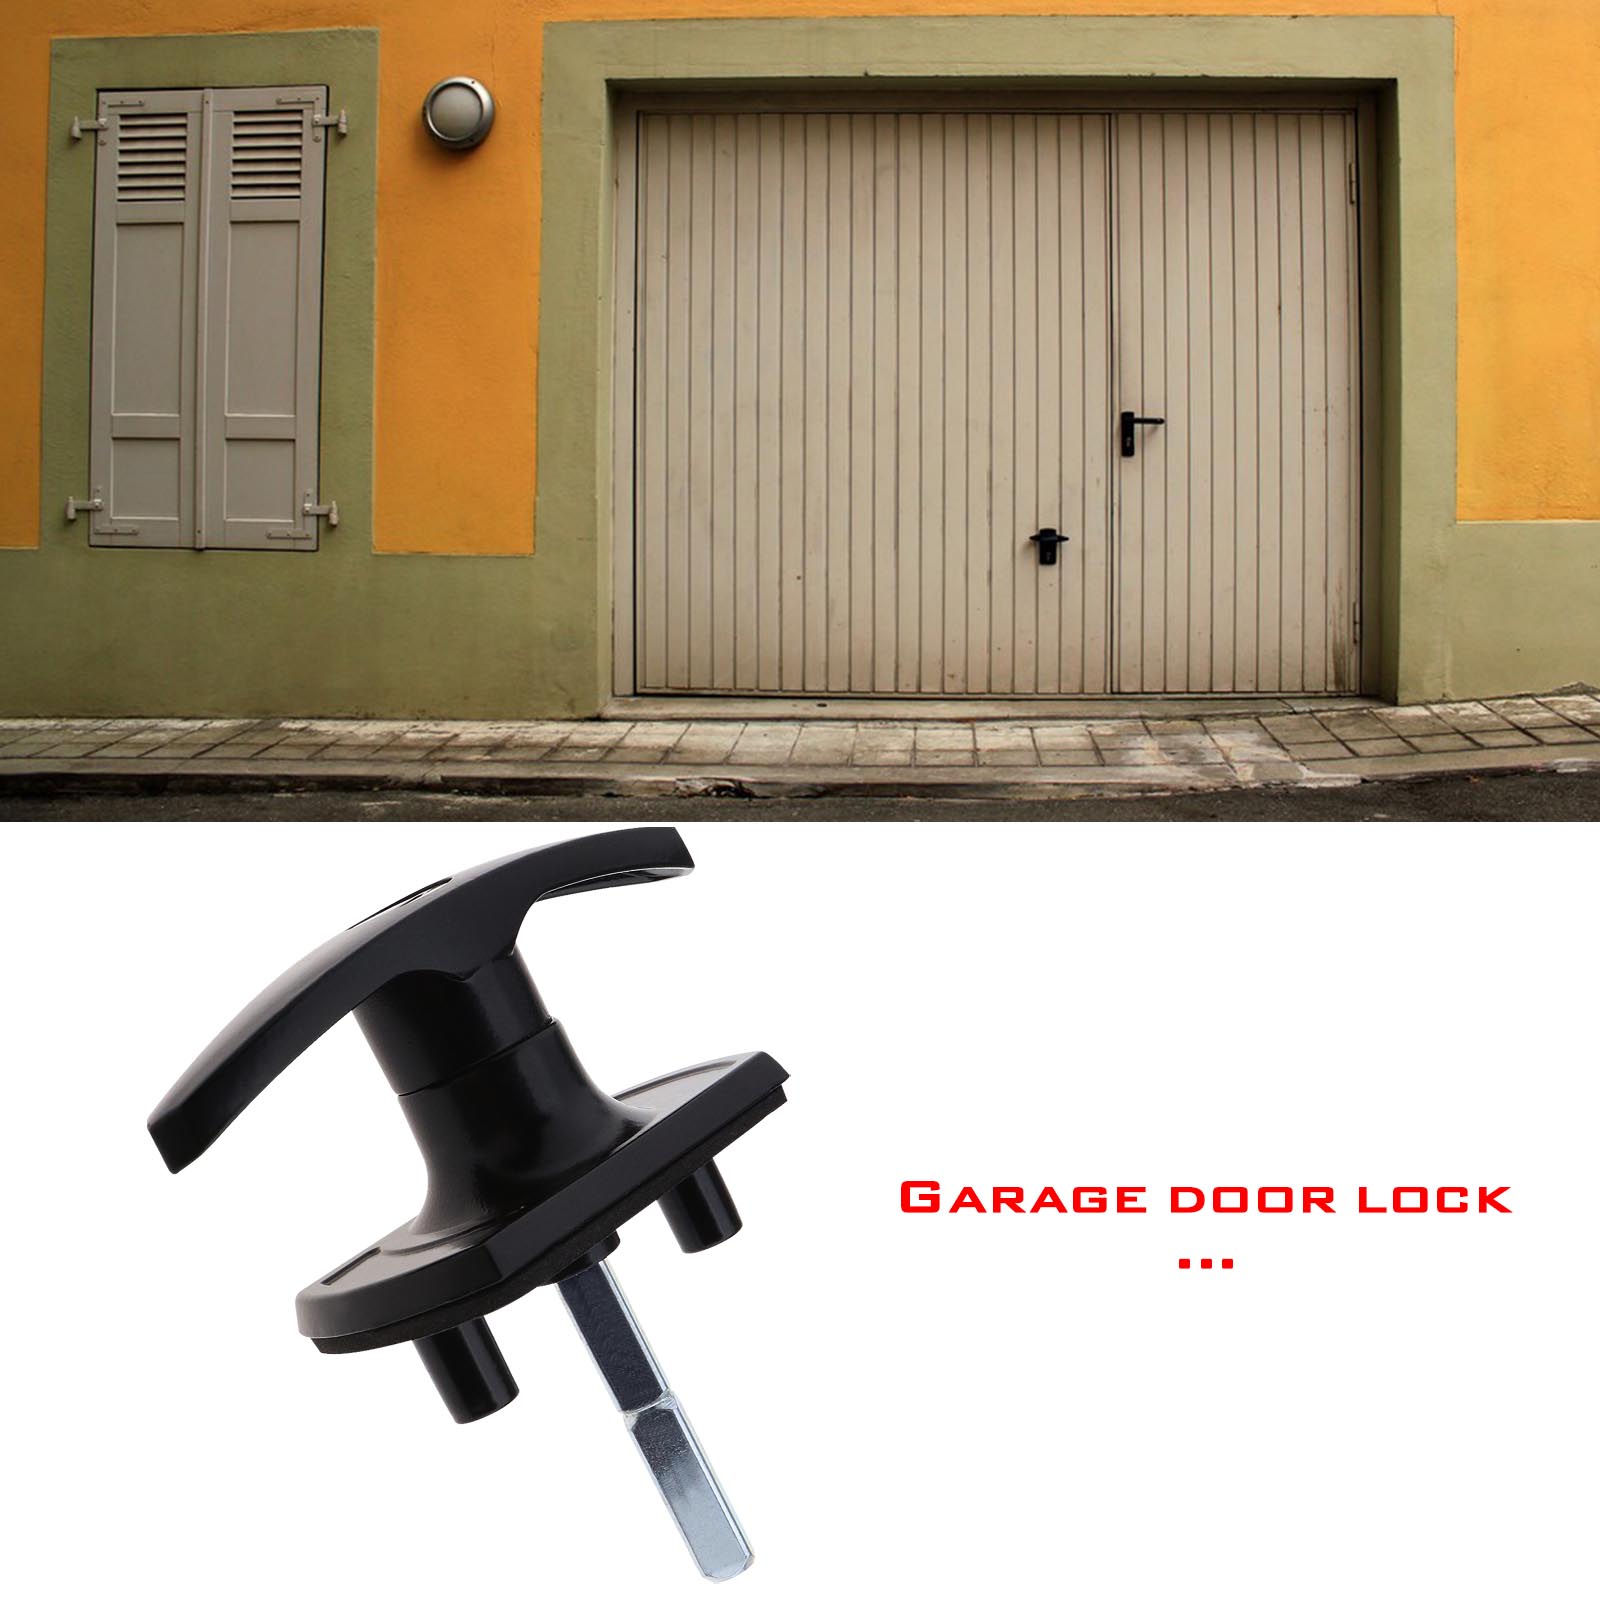 Latest How To Fix Garage Door Handle with Modern Design